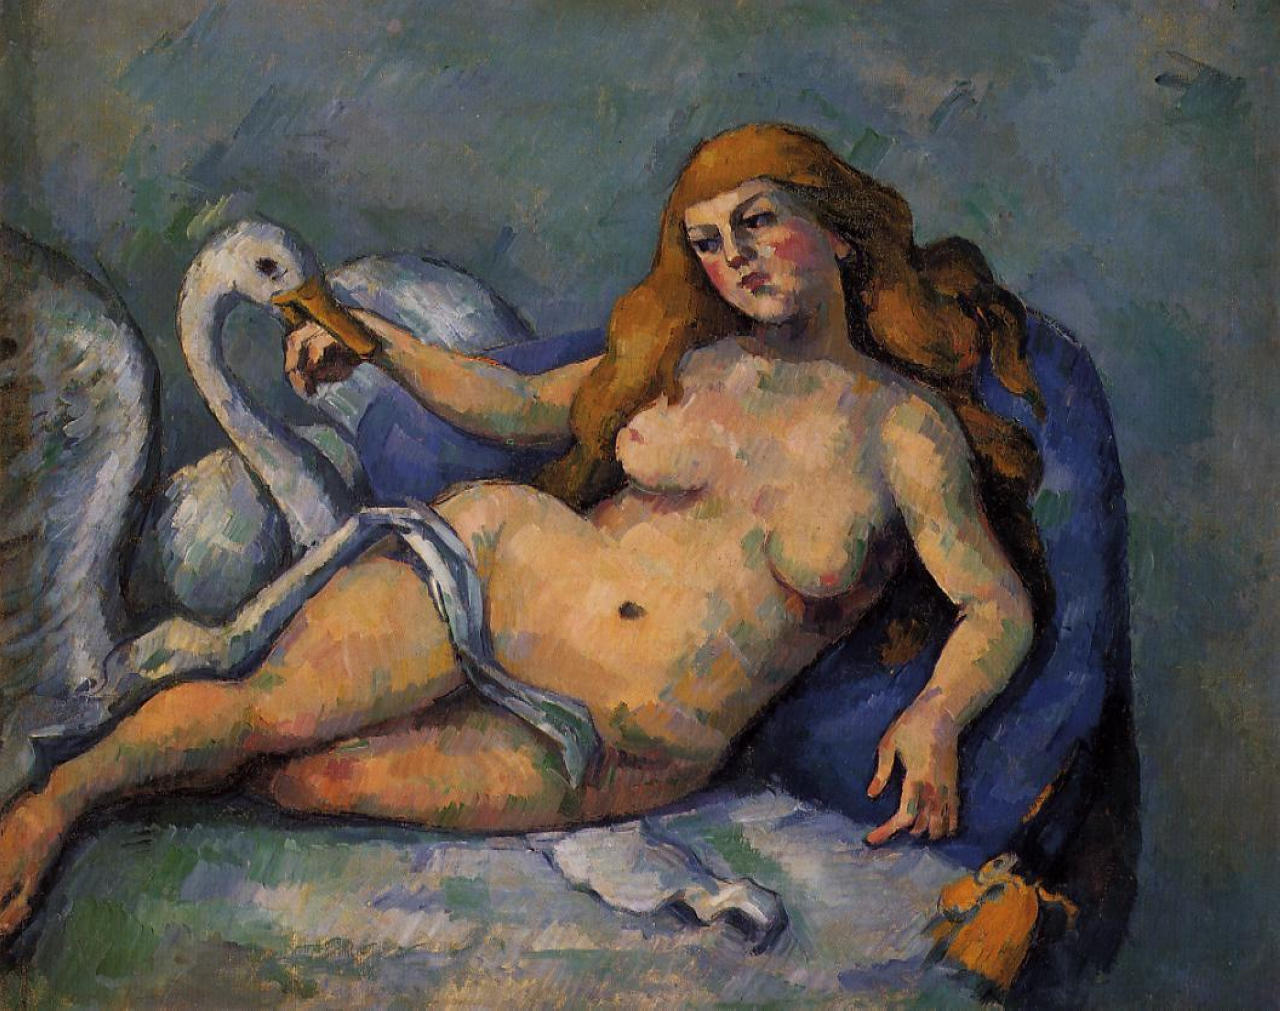 Léda és a hattyú by Paul Cézanne - 1882 körül - 59,7 x 74,9 cm 